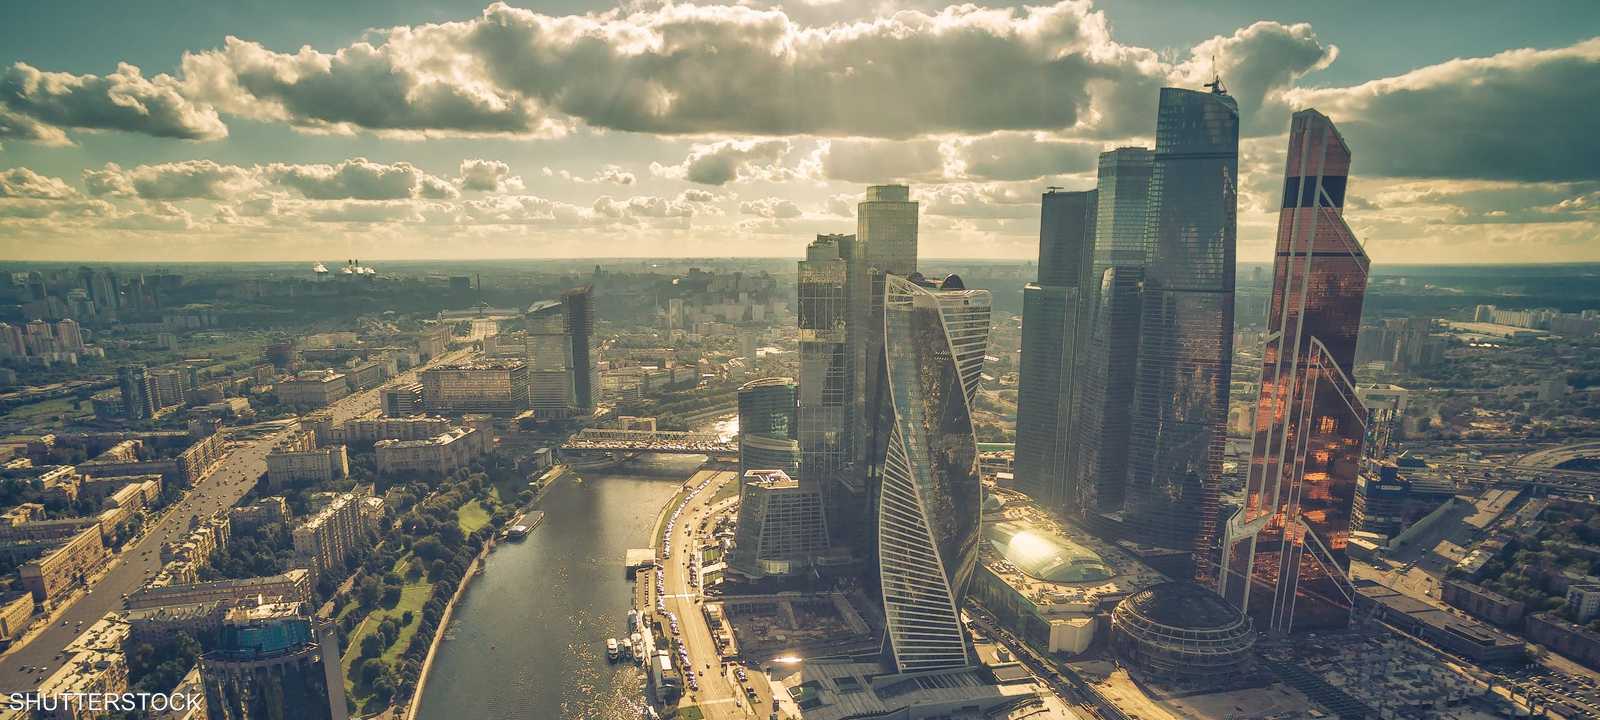 العاصمة الروسية موسكو